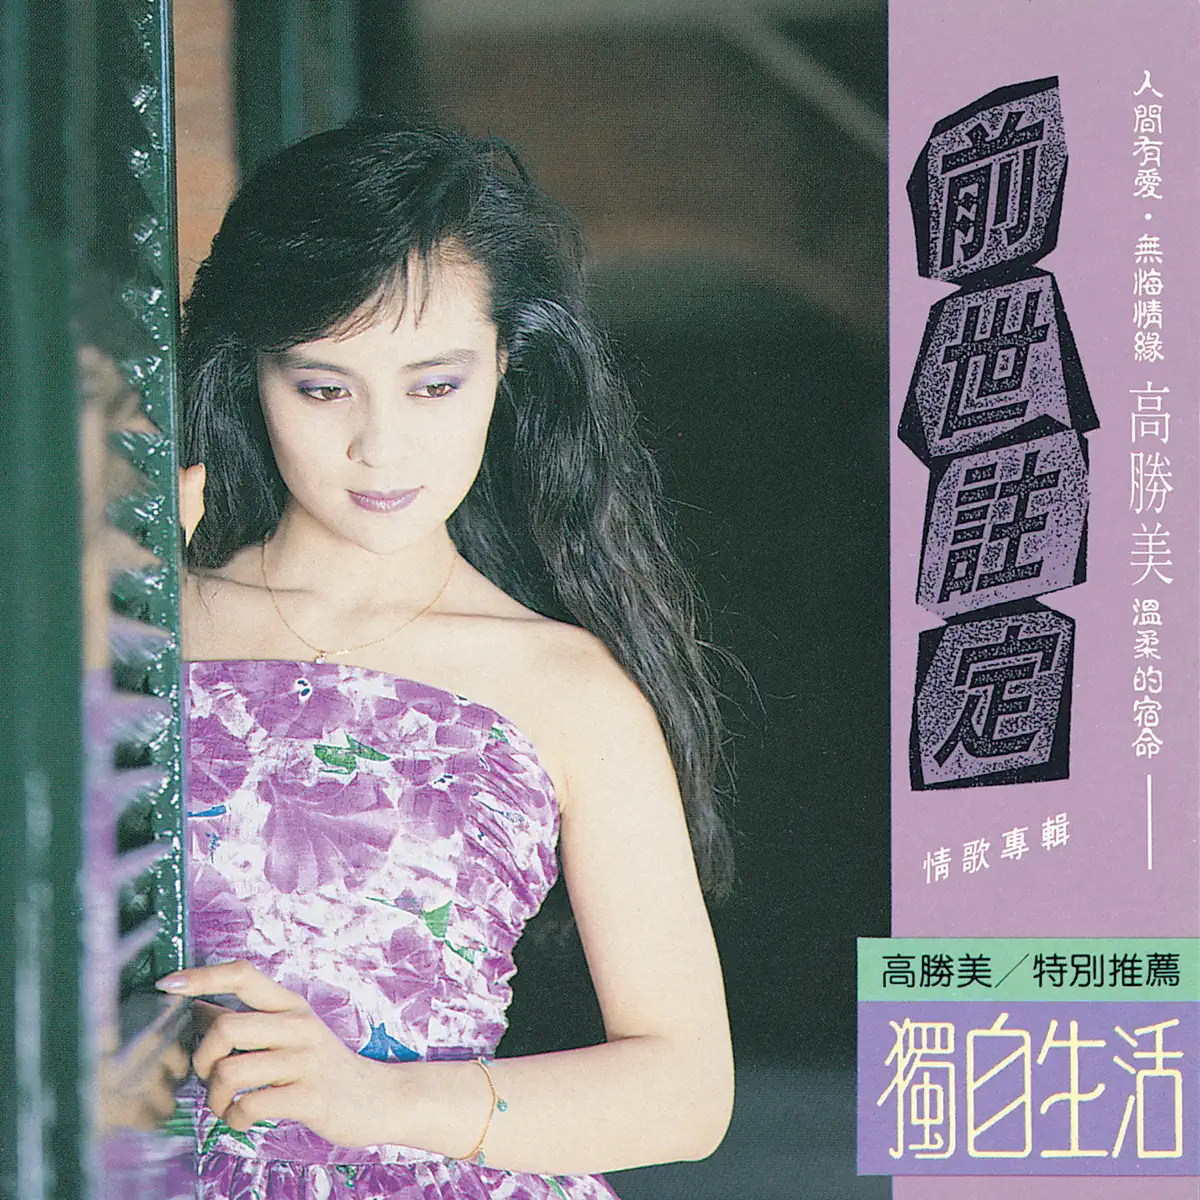 高勝美 - 高勝美雷射金曲13 (1988) [iTunes Plus AAC M4A]-新房子